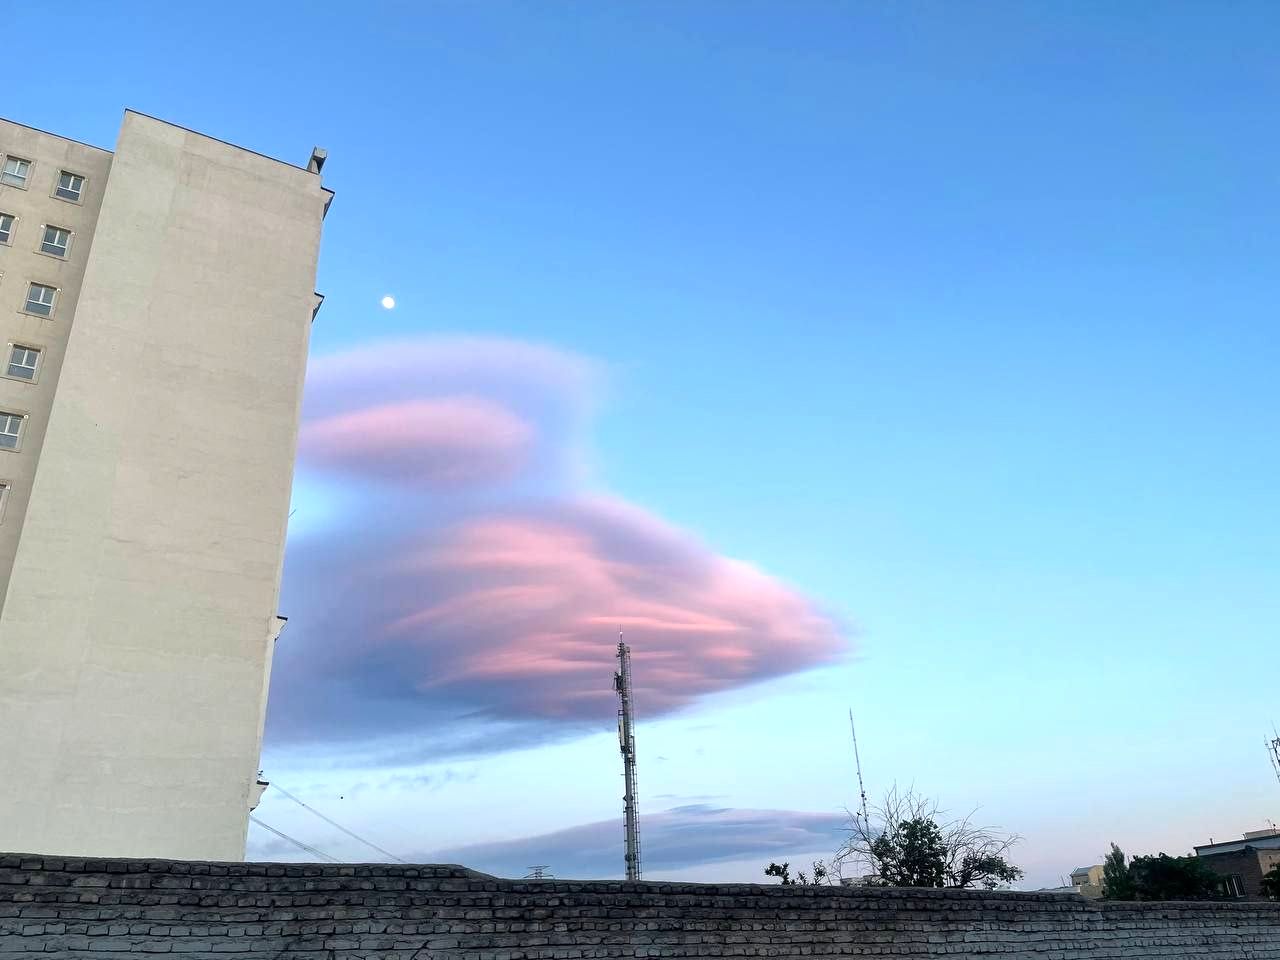 مشاهده ابرهای مشکوک و عجیب در تهران